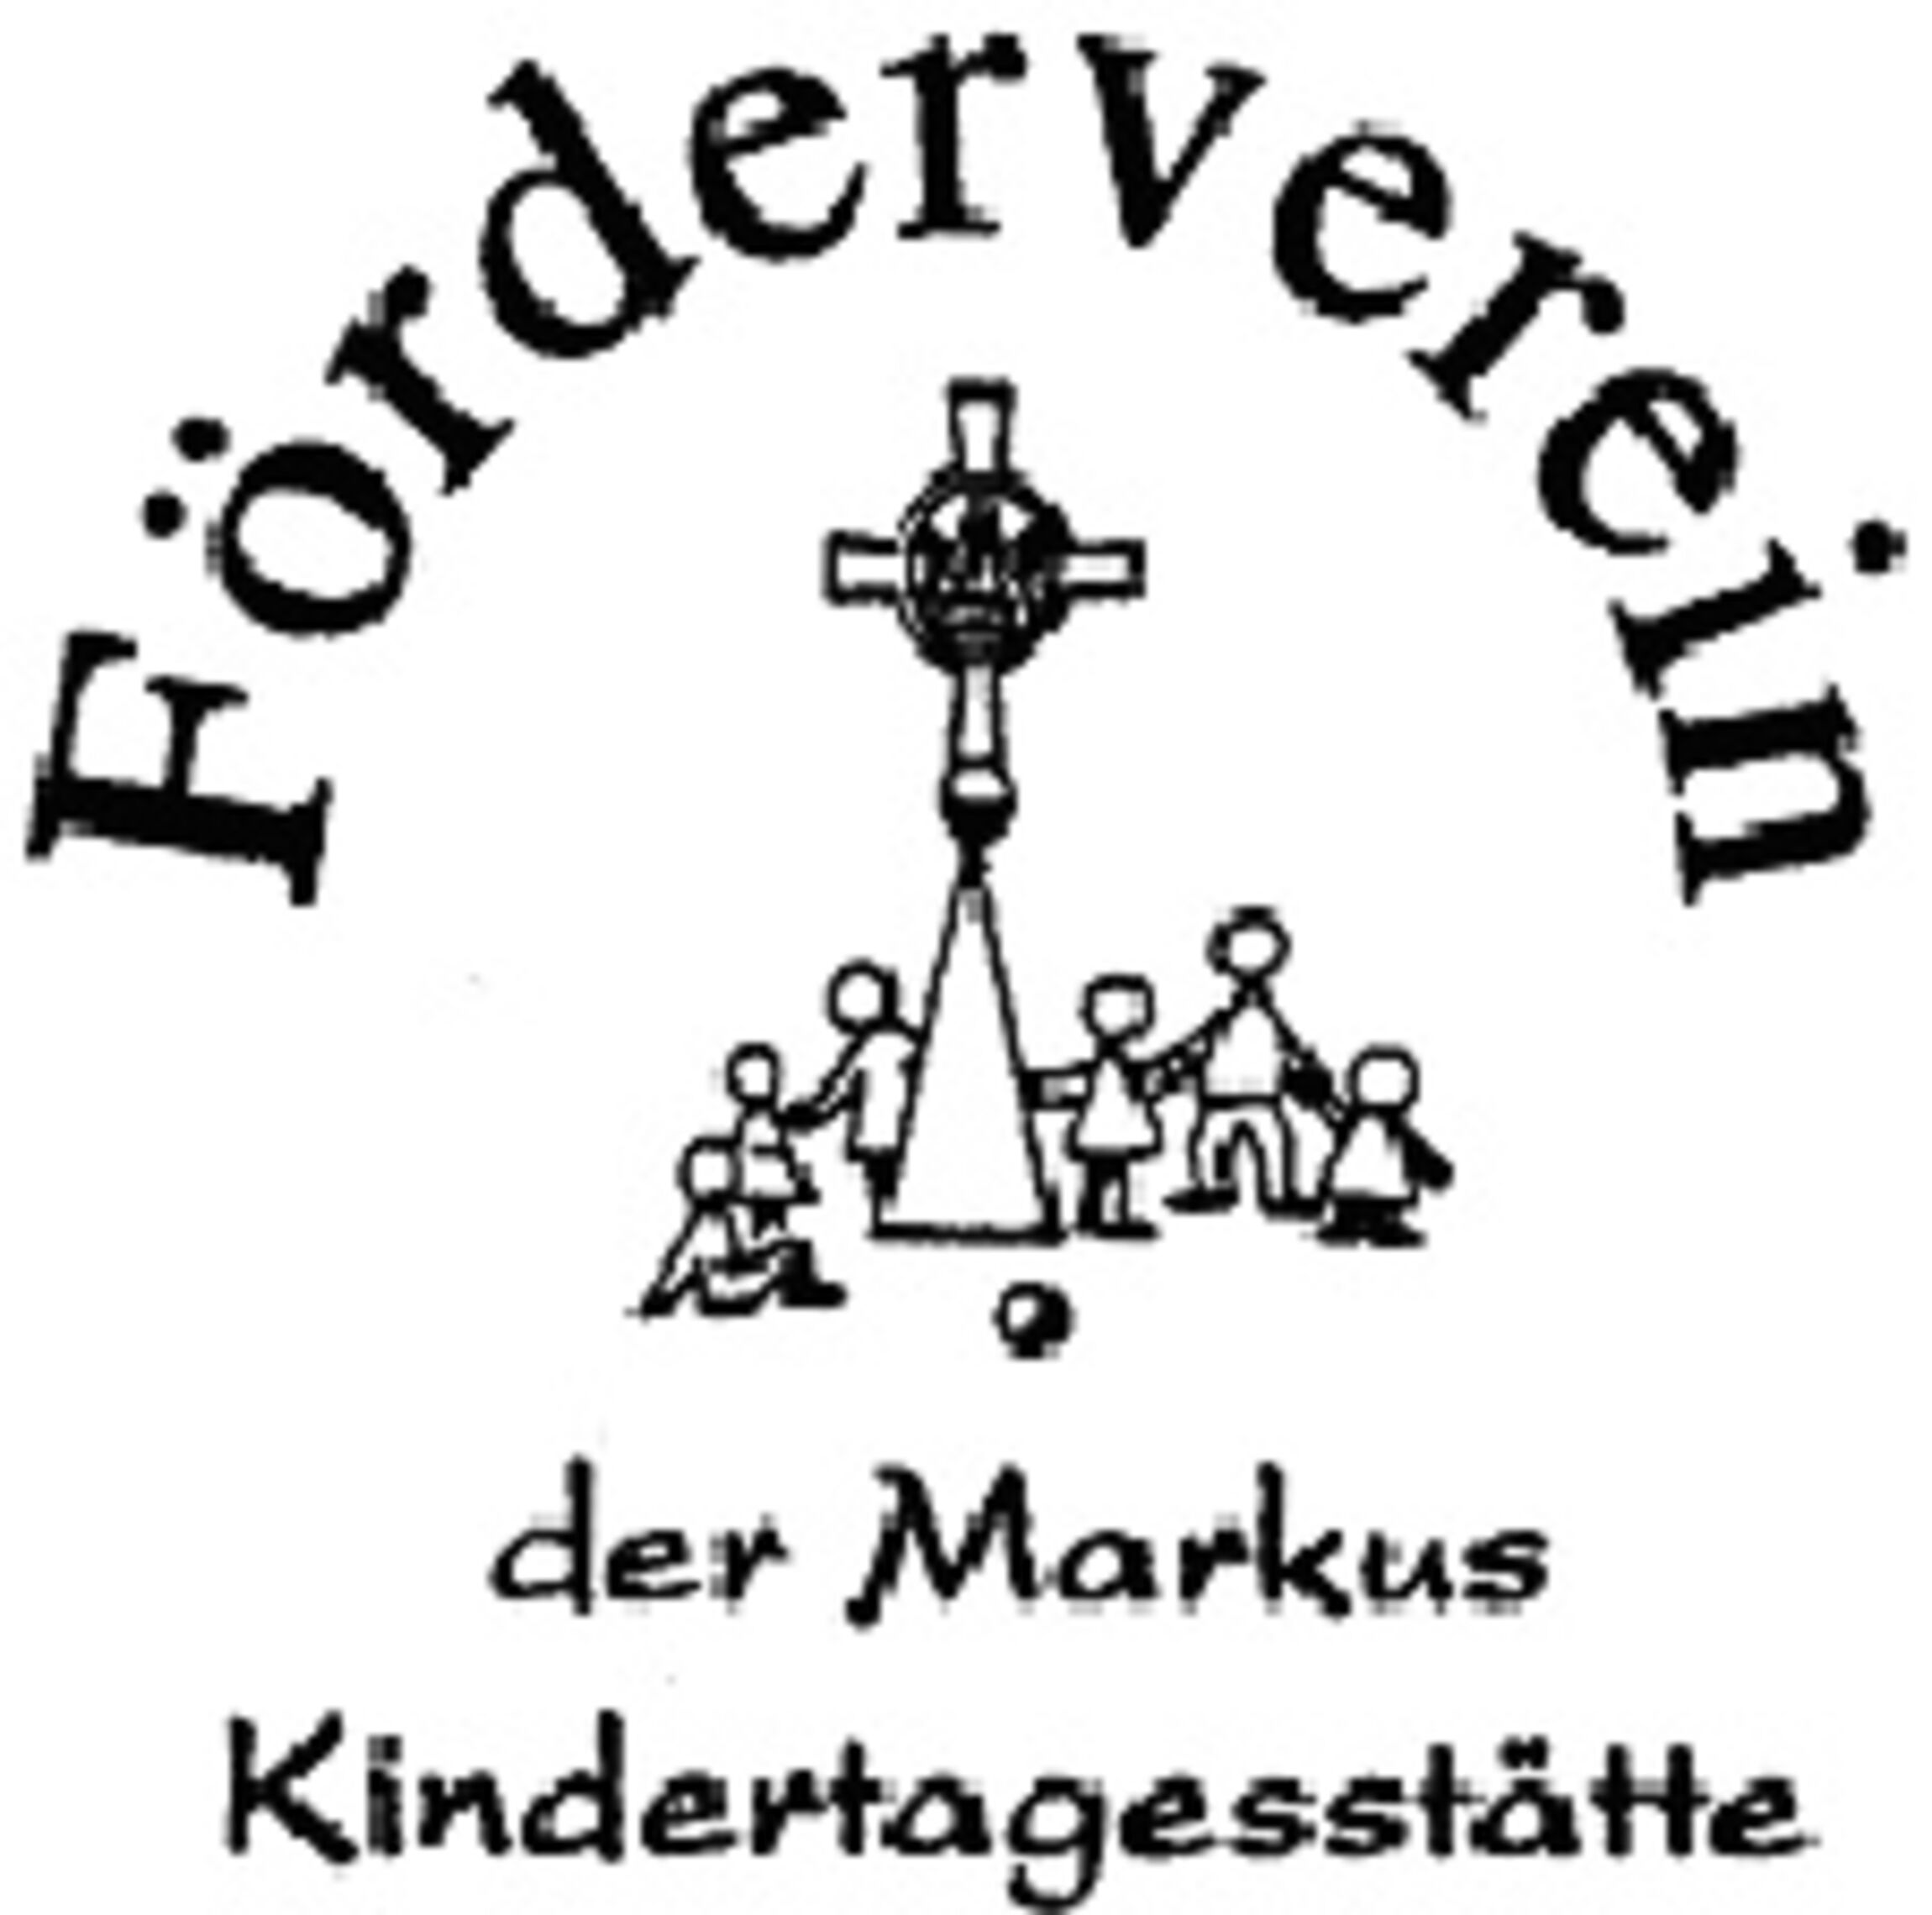 logo_foerderverein